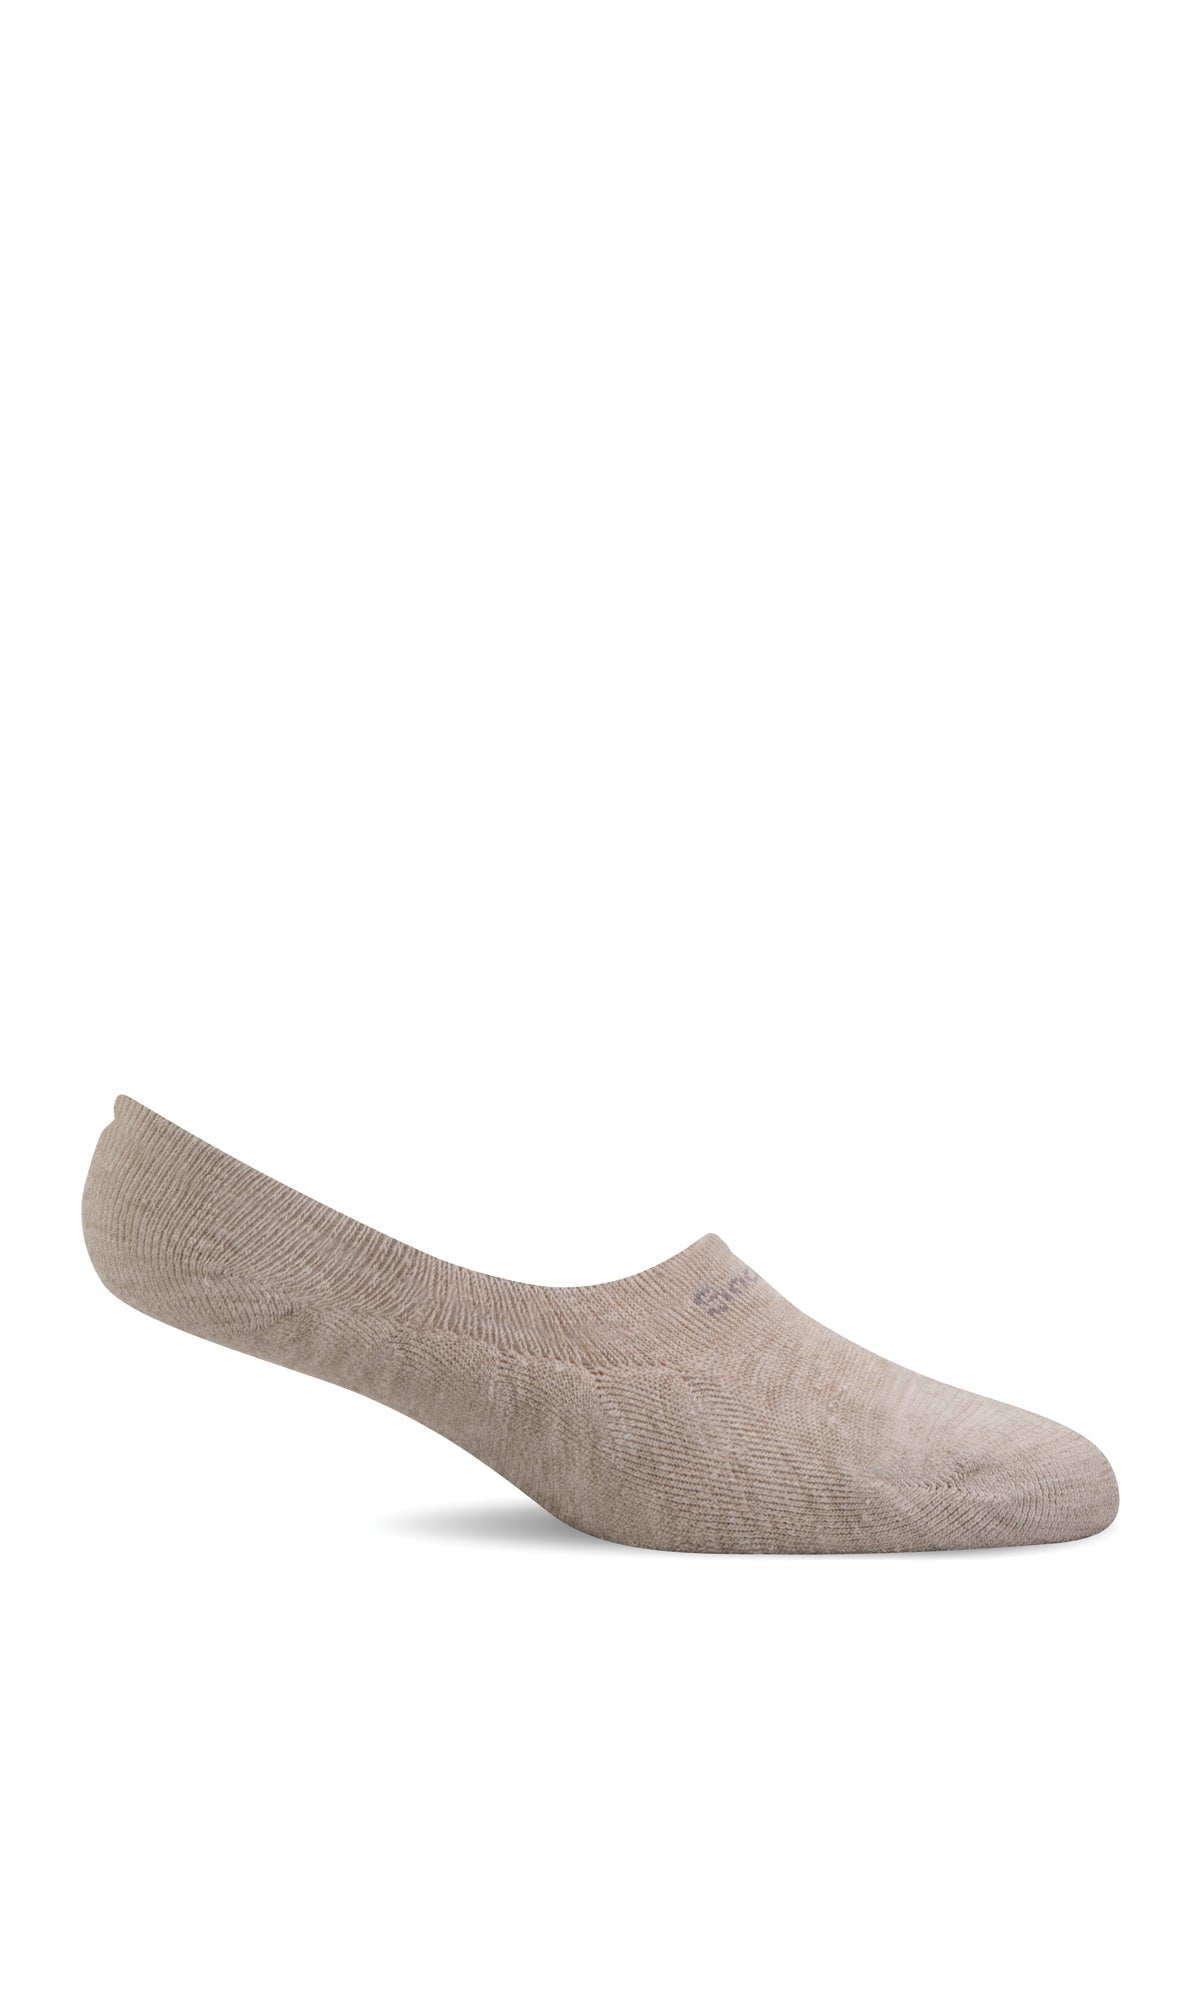 Women's Undercover Cush | Essential Comfort Socks - Merino Wool Essential Comfort - Sockwell